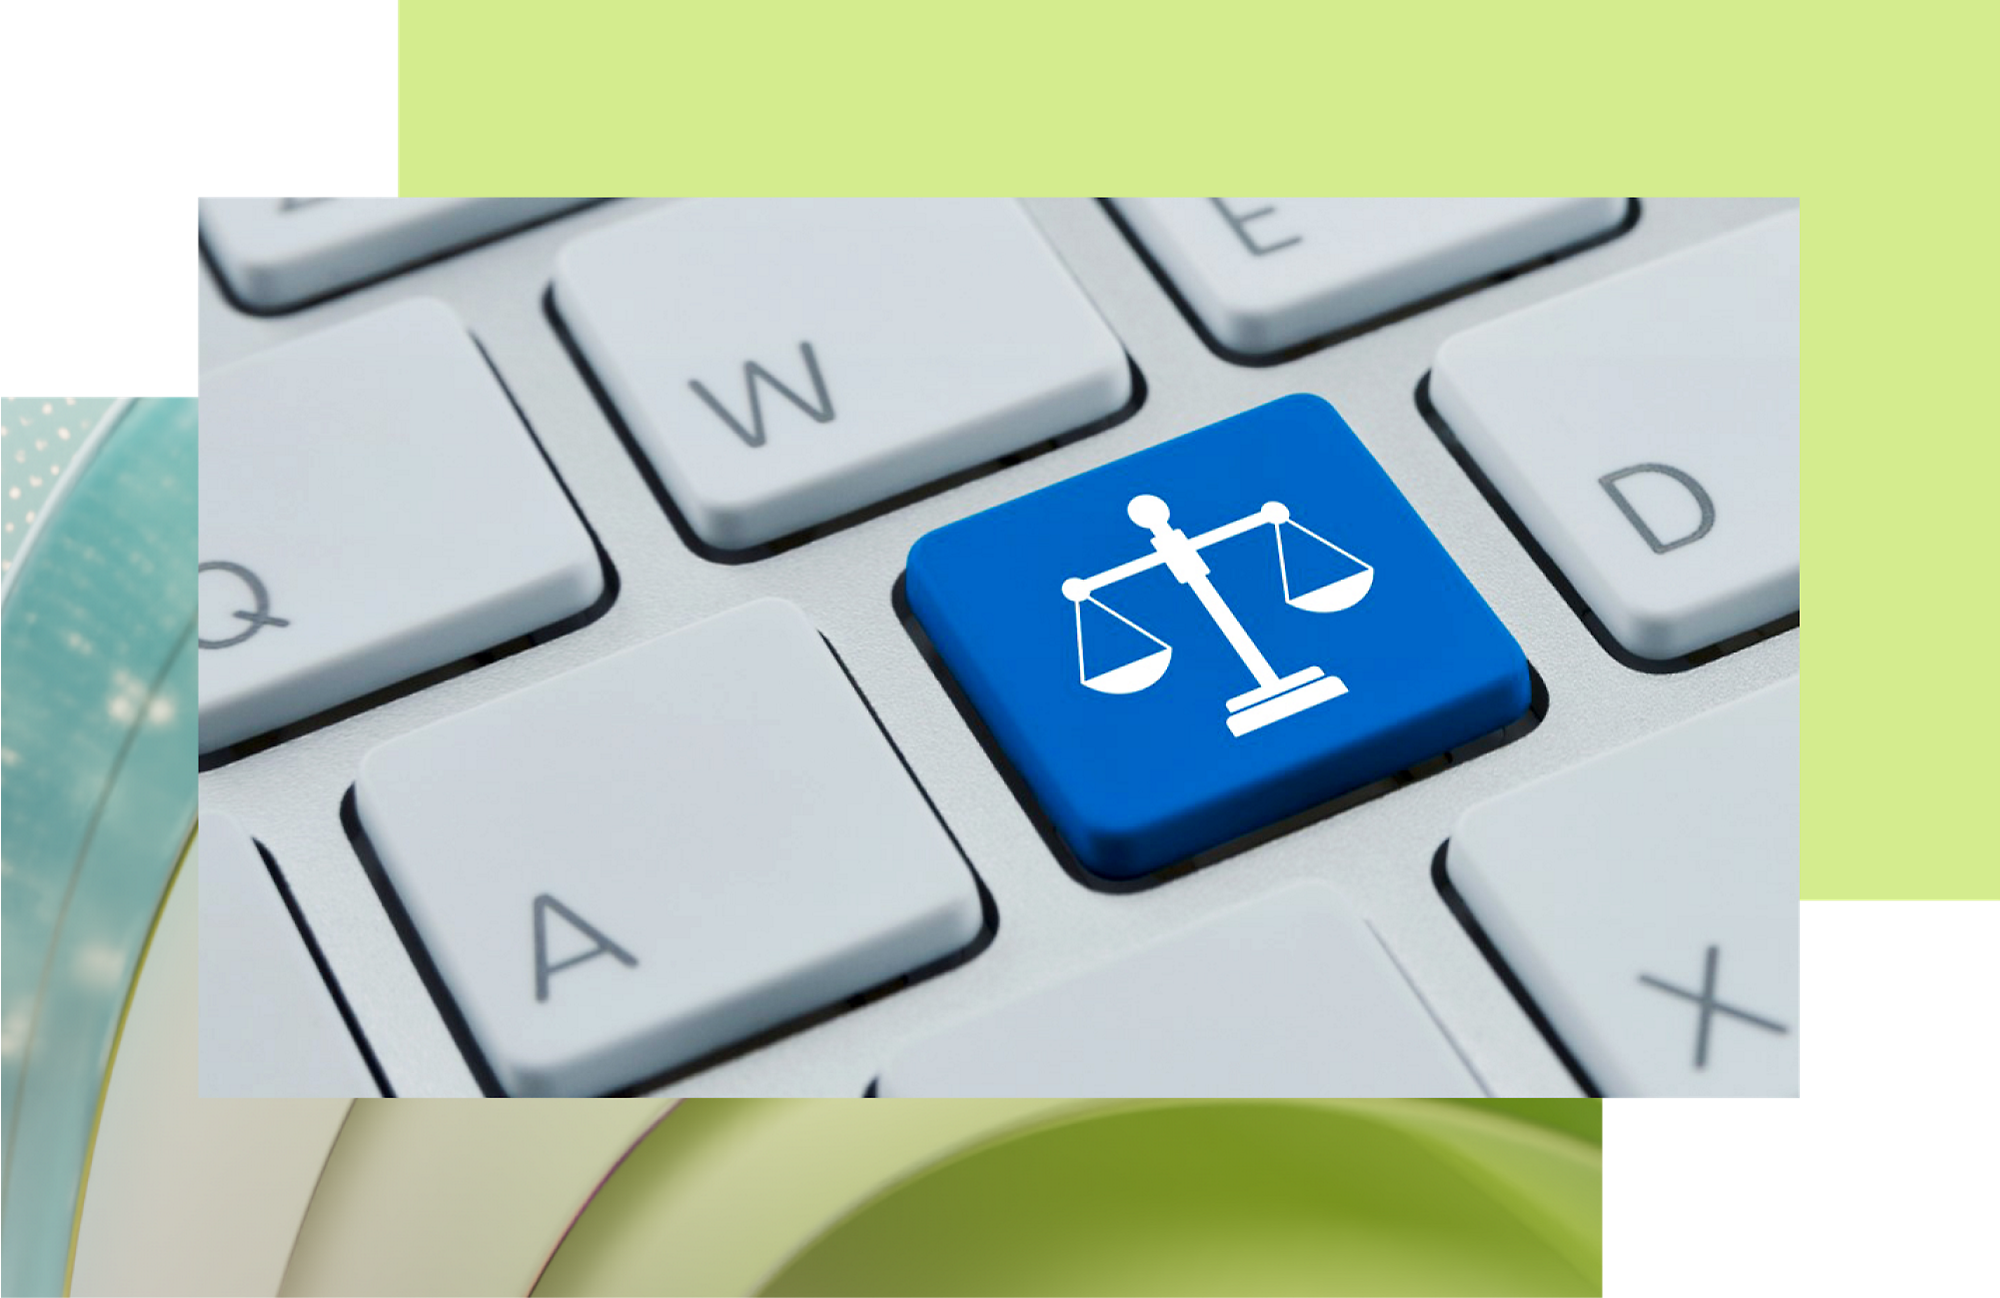 Синя клавіша з білою емблемою правосуддя на клавіатурі, що символізує правову допомогу або технологію, розроблену для потреб правосуддя.